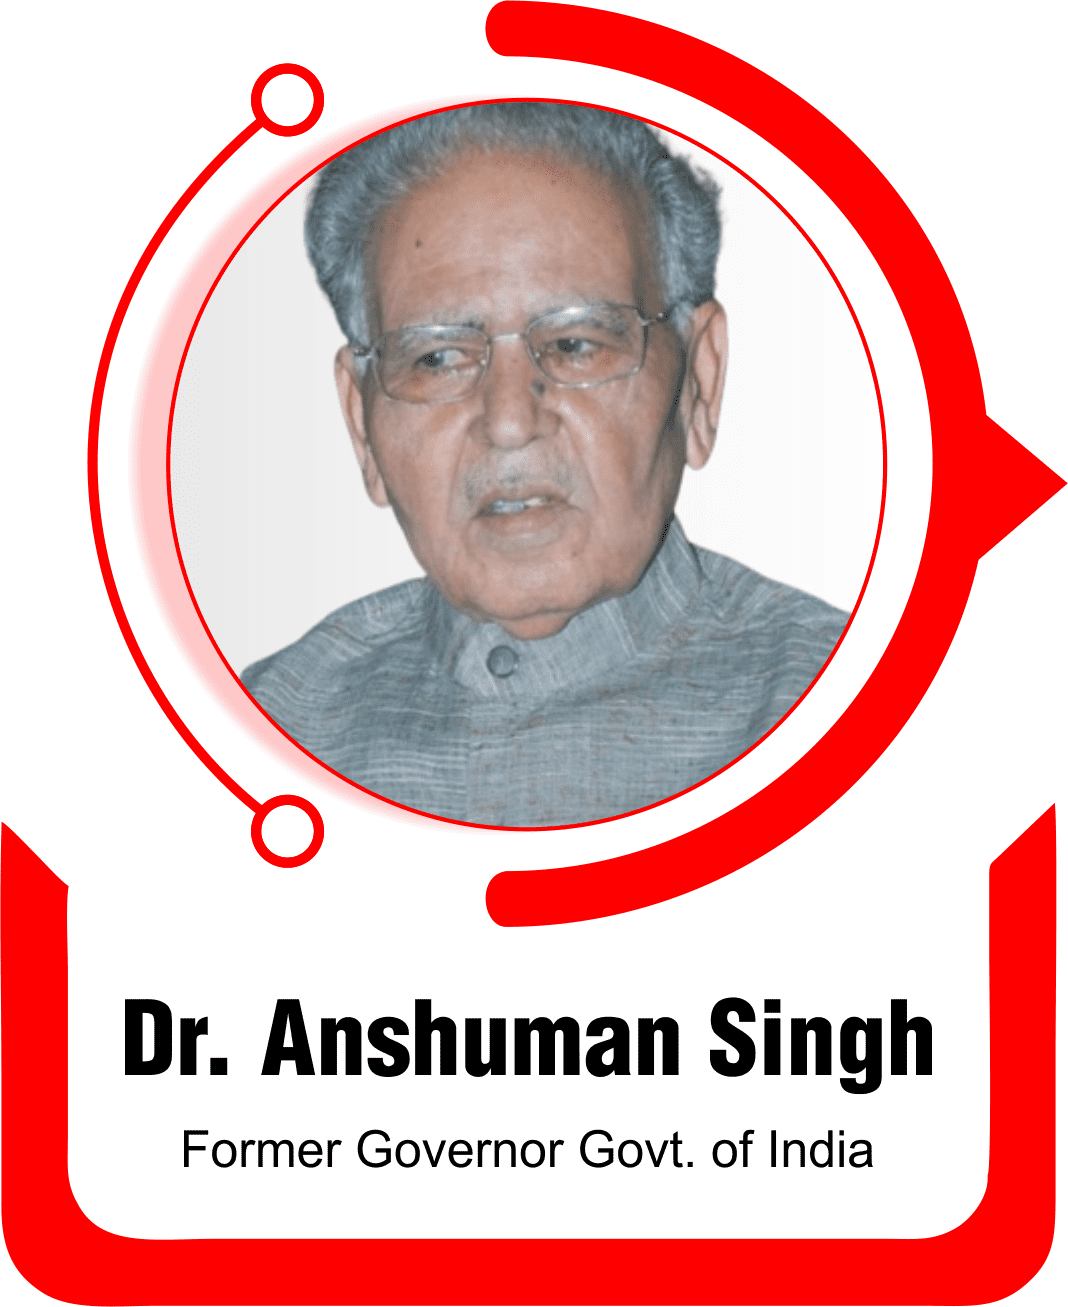 Anshuman Singh